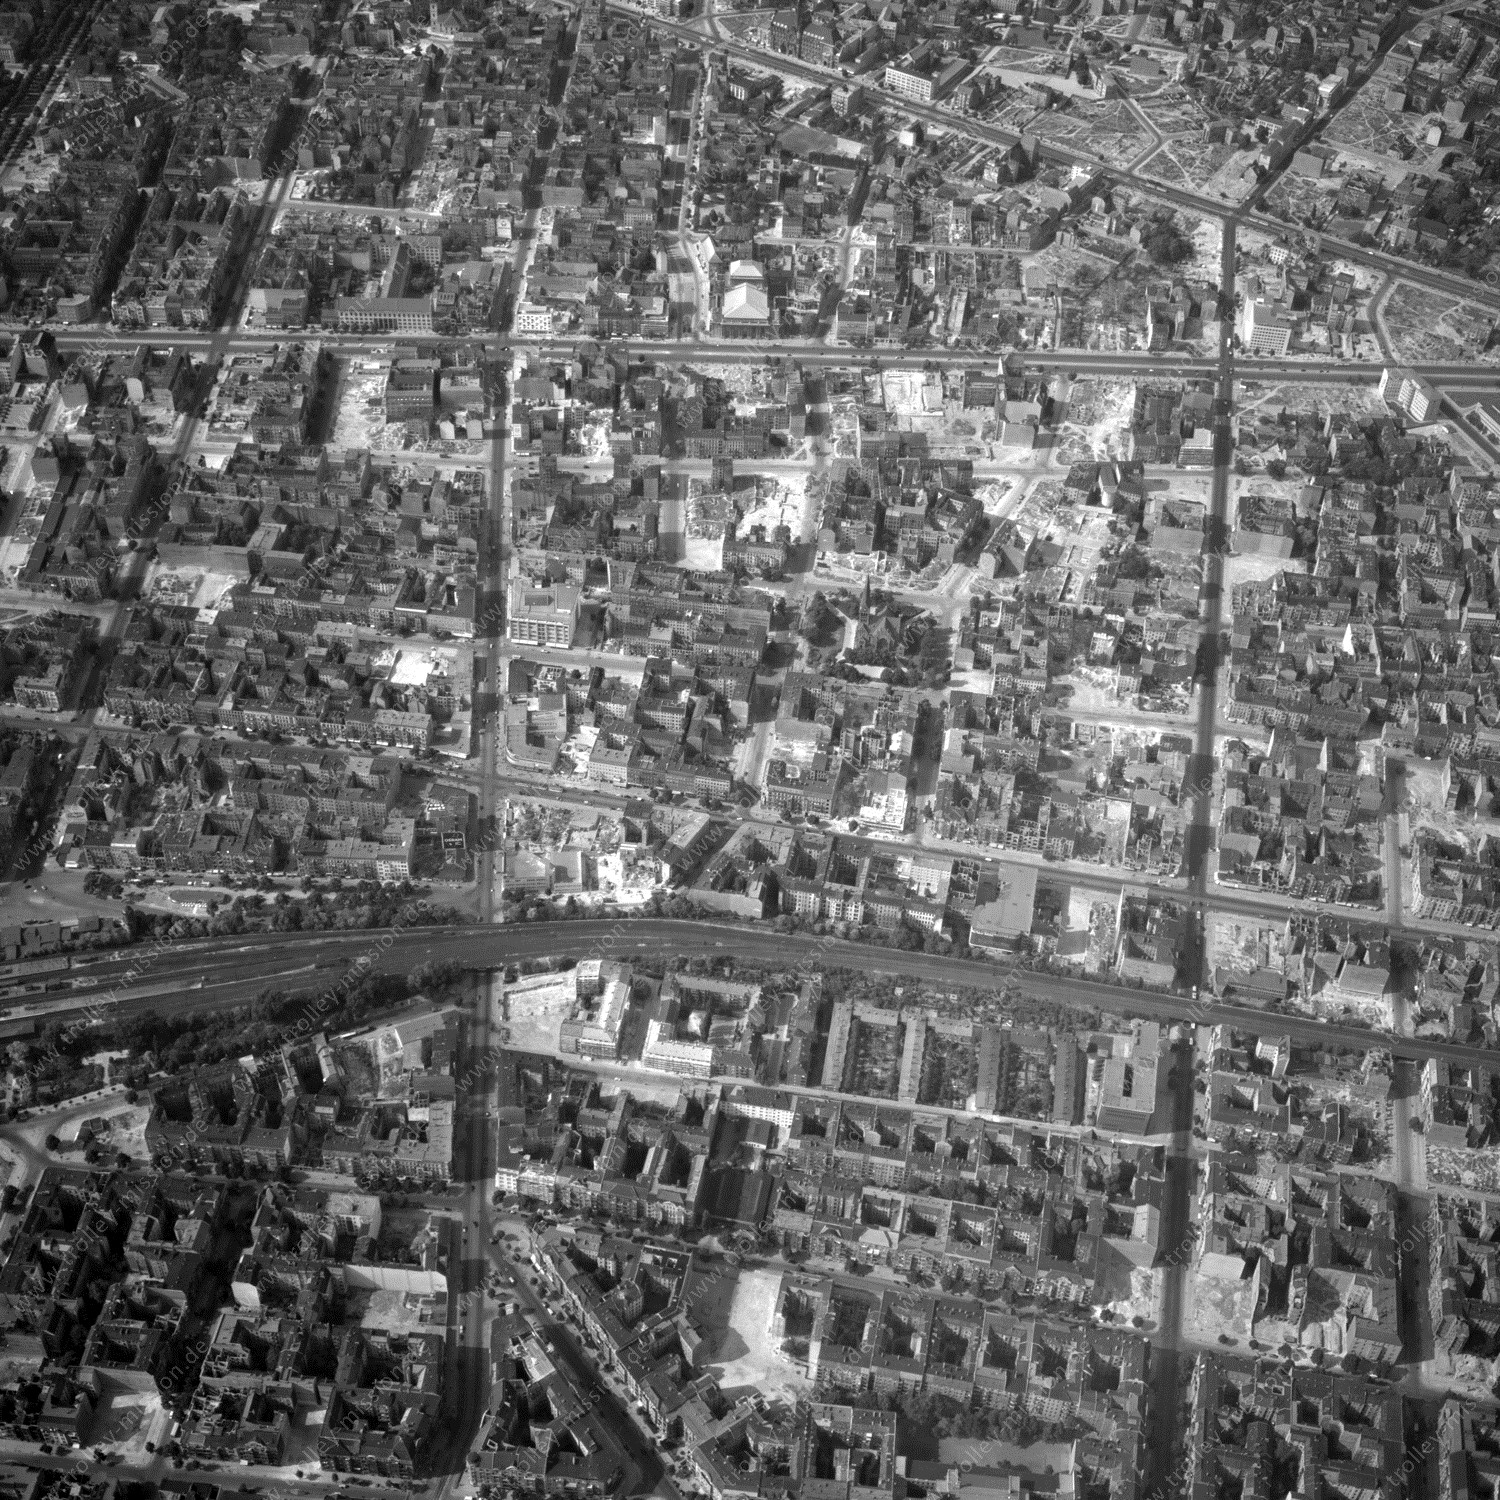 Alte Fotos und Luftbilder von Berlin - Luftbildaufnahme Nr. 09 - Historische Luftaufnahmen von West-Berlin aus dem Jahr 1954 - Flugstrecke Yankee